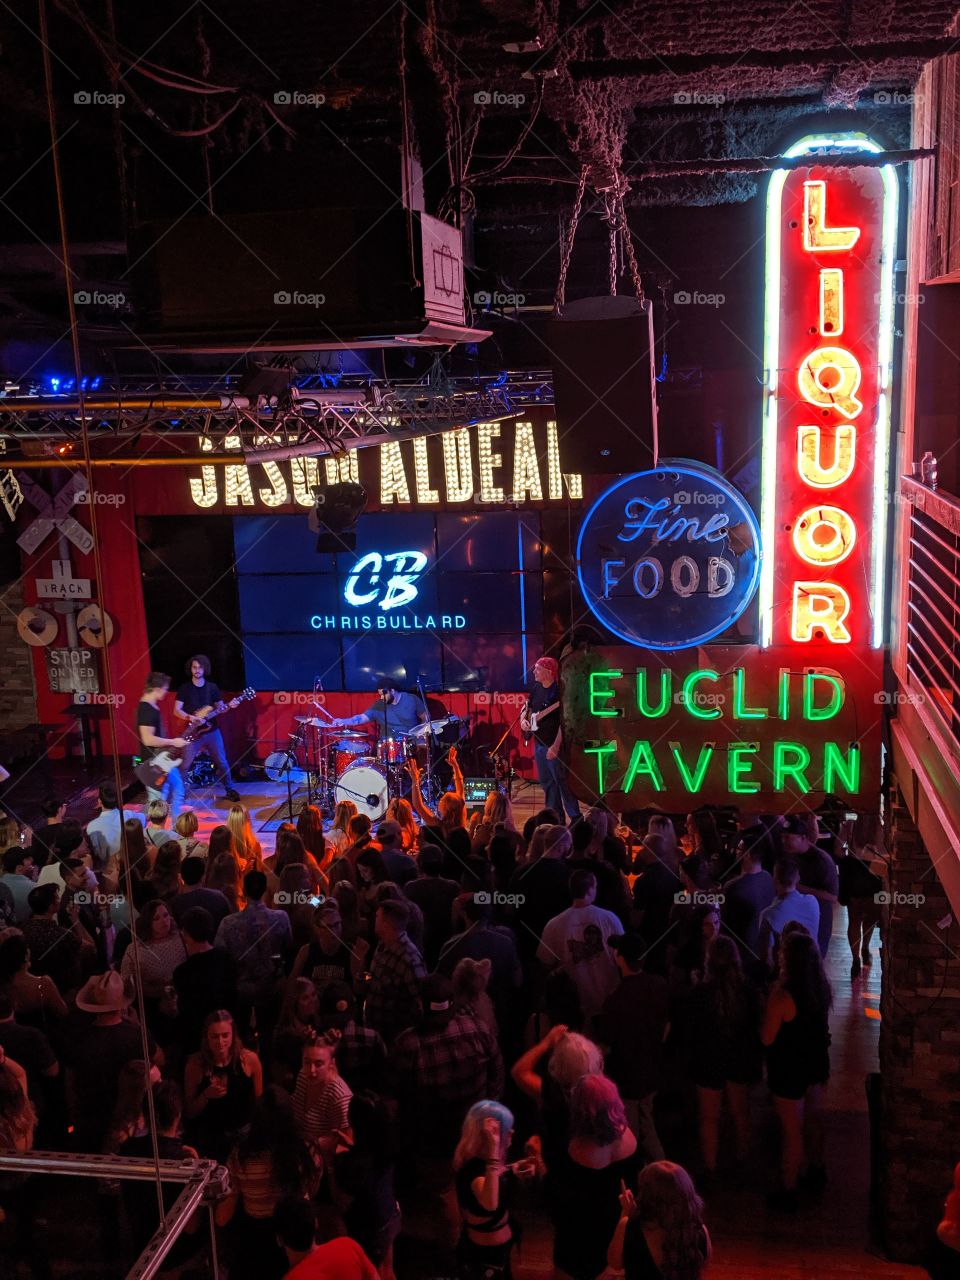 inside the Jason Aldean bar in Nashville, TN